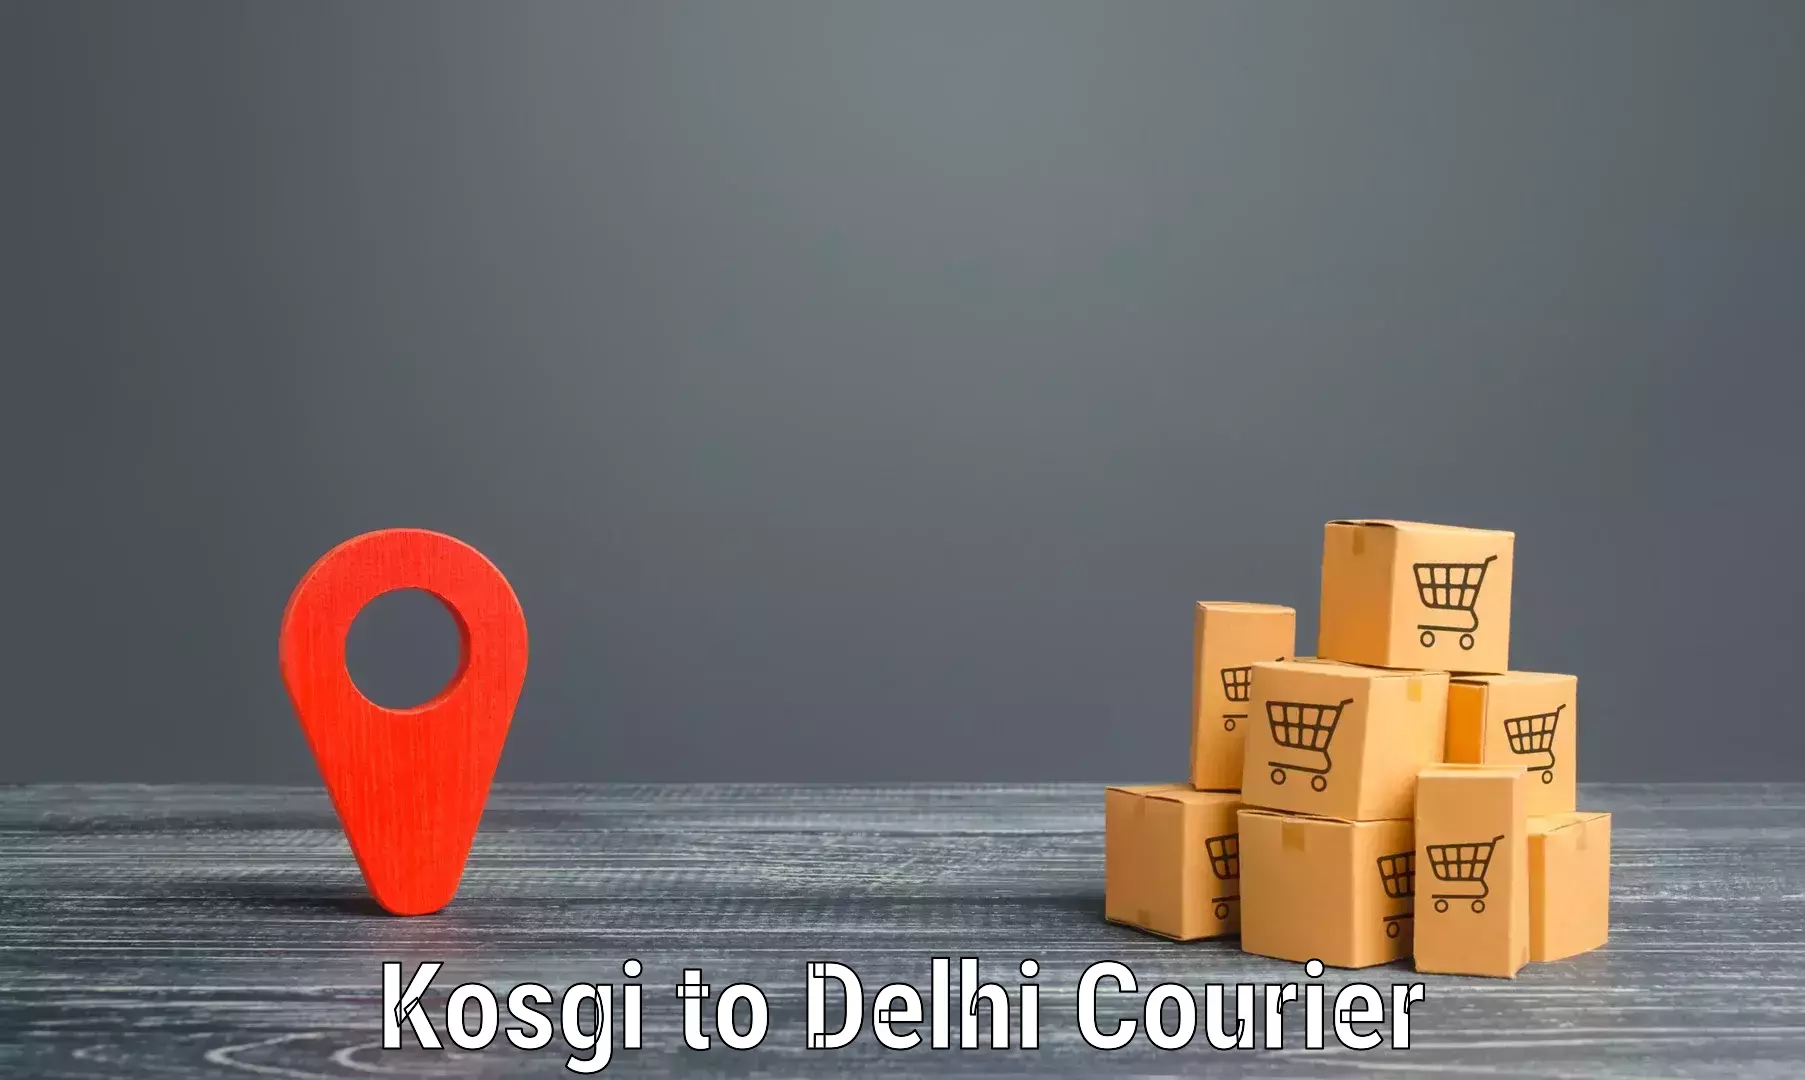 Overnight delivery services Kosgi to Delhi